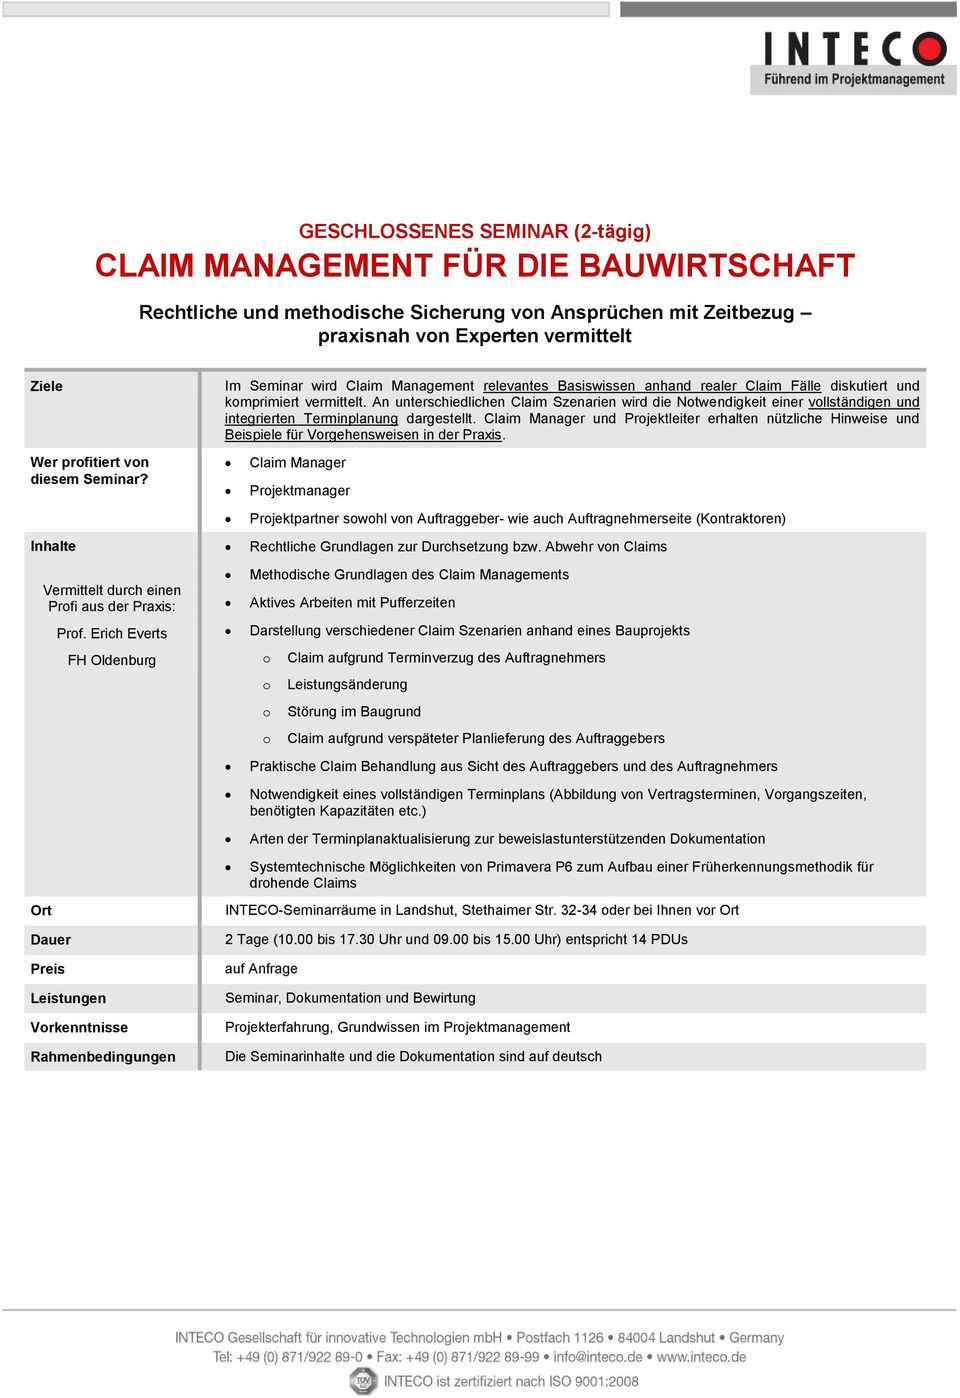 Erich Everts FH Oldenburg Vrkenntnisse Im Seminar wird Claim Management relevantes Basiswissen anhand realer Claim Fälle diskutiert und kmprimiert vermittelt.